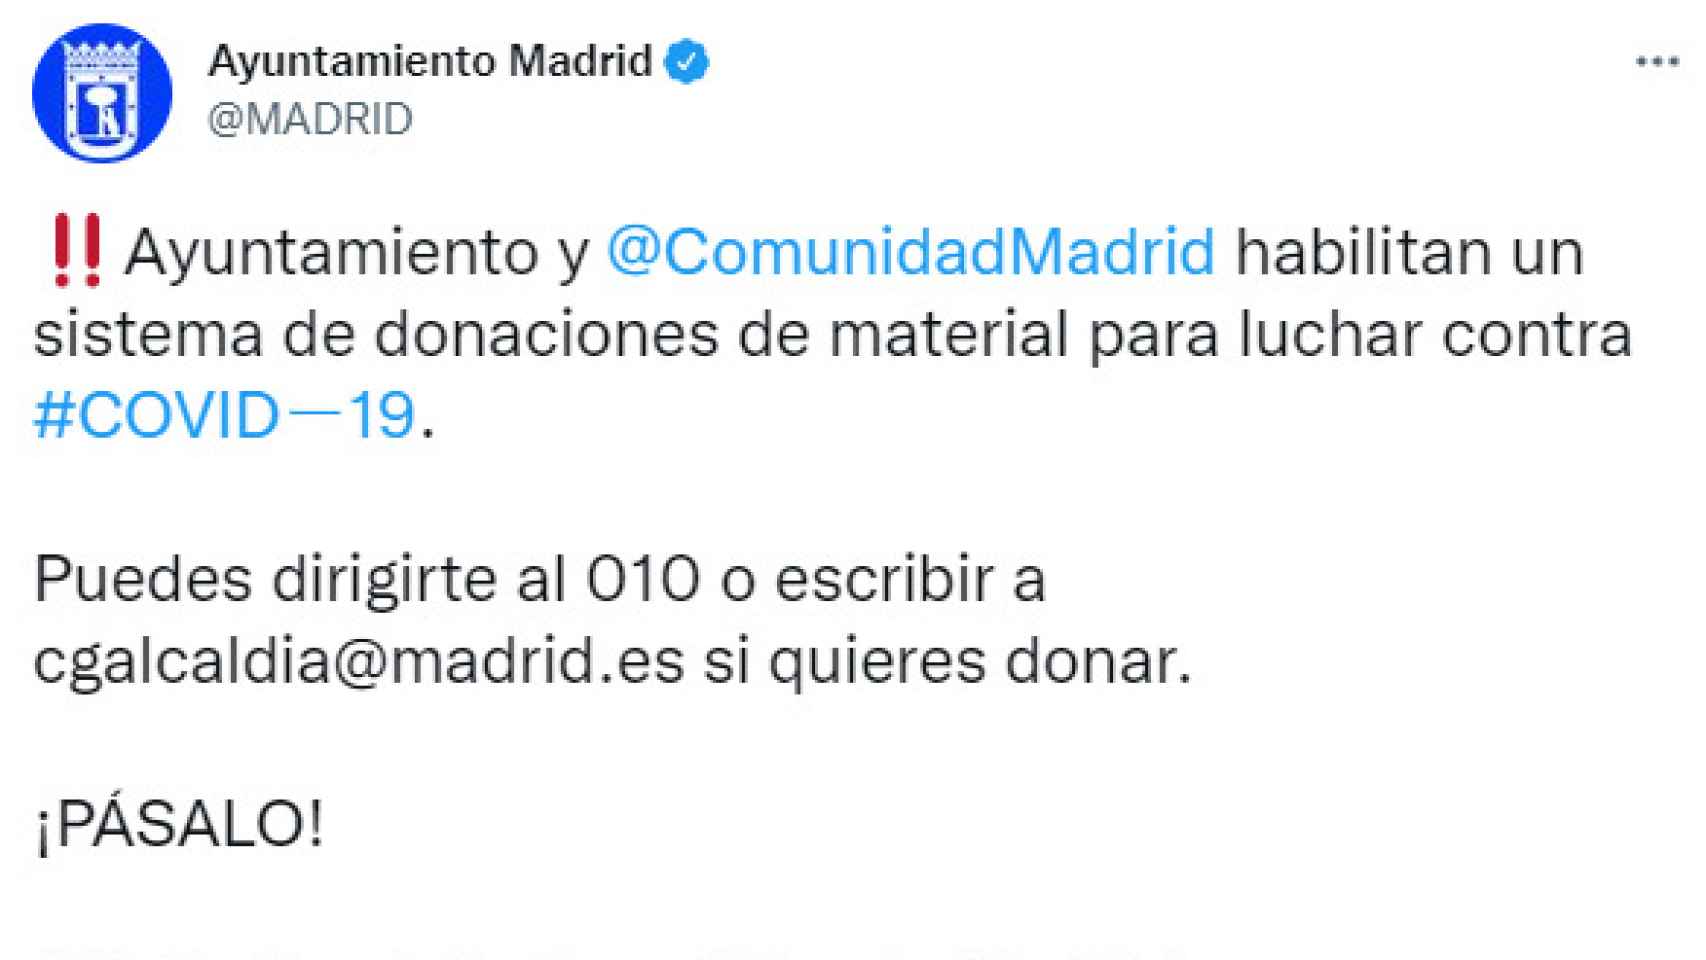 Tuit del Ayuntamiento de Madrid del 22 de marzo de 2020.